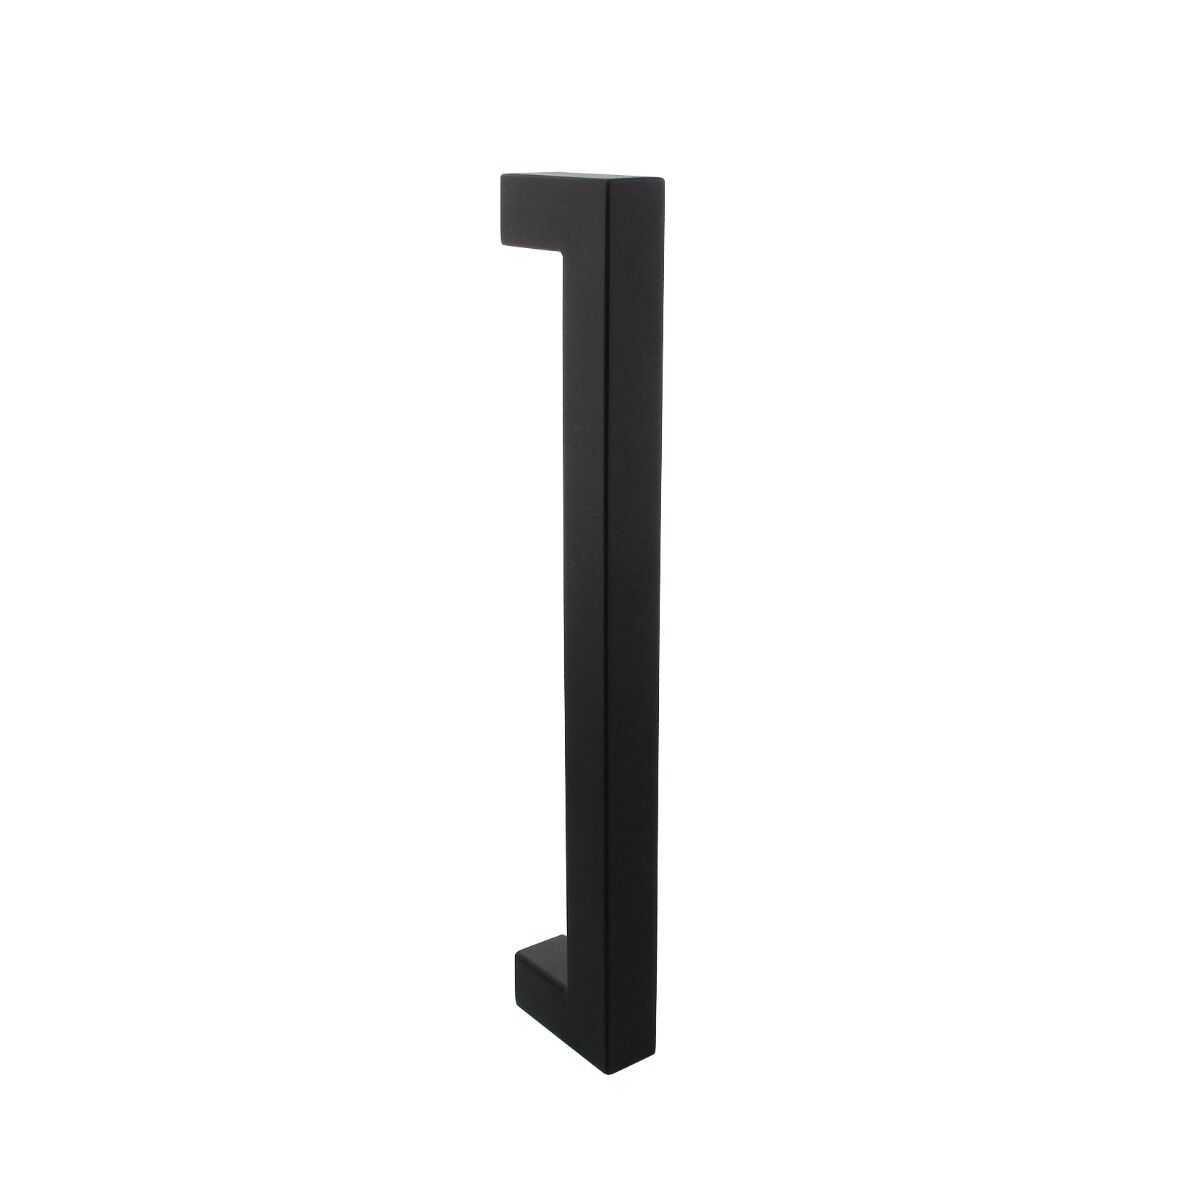 Intersteel door handle Square, Intersteel Door handle